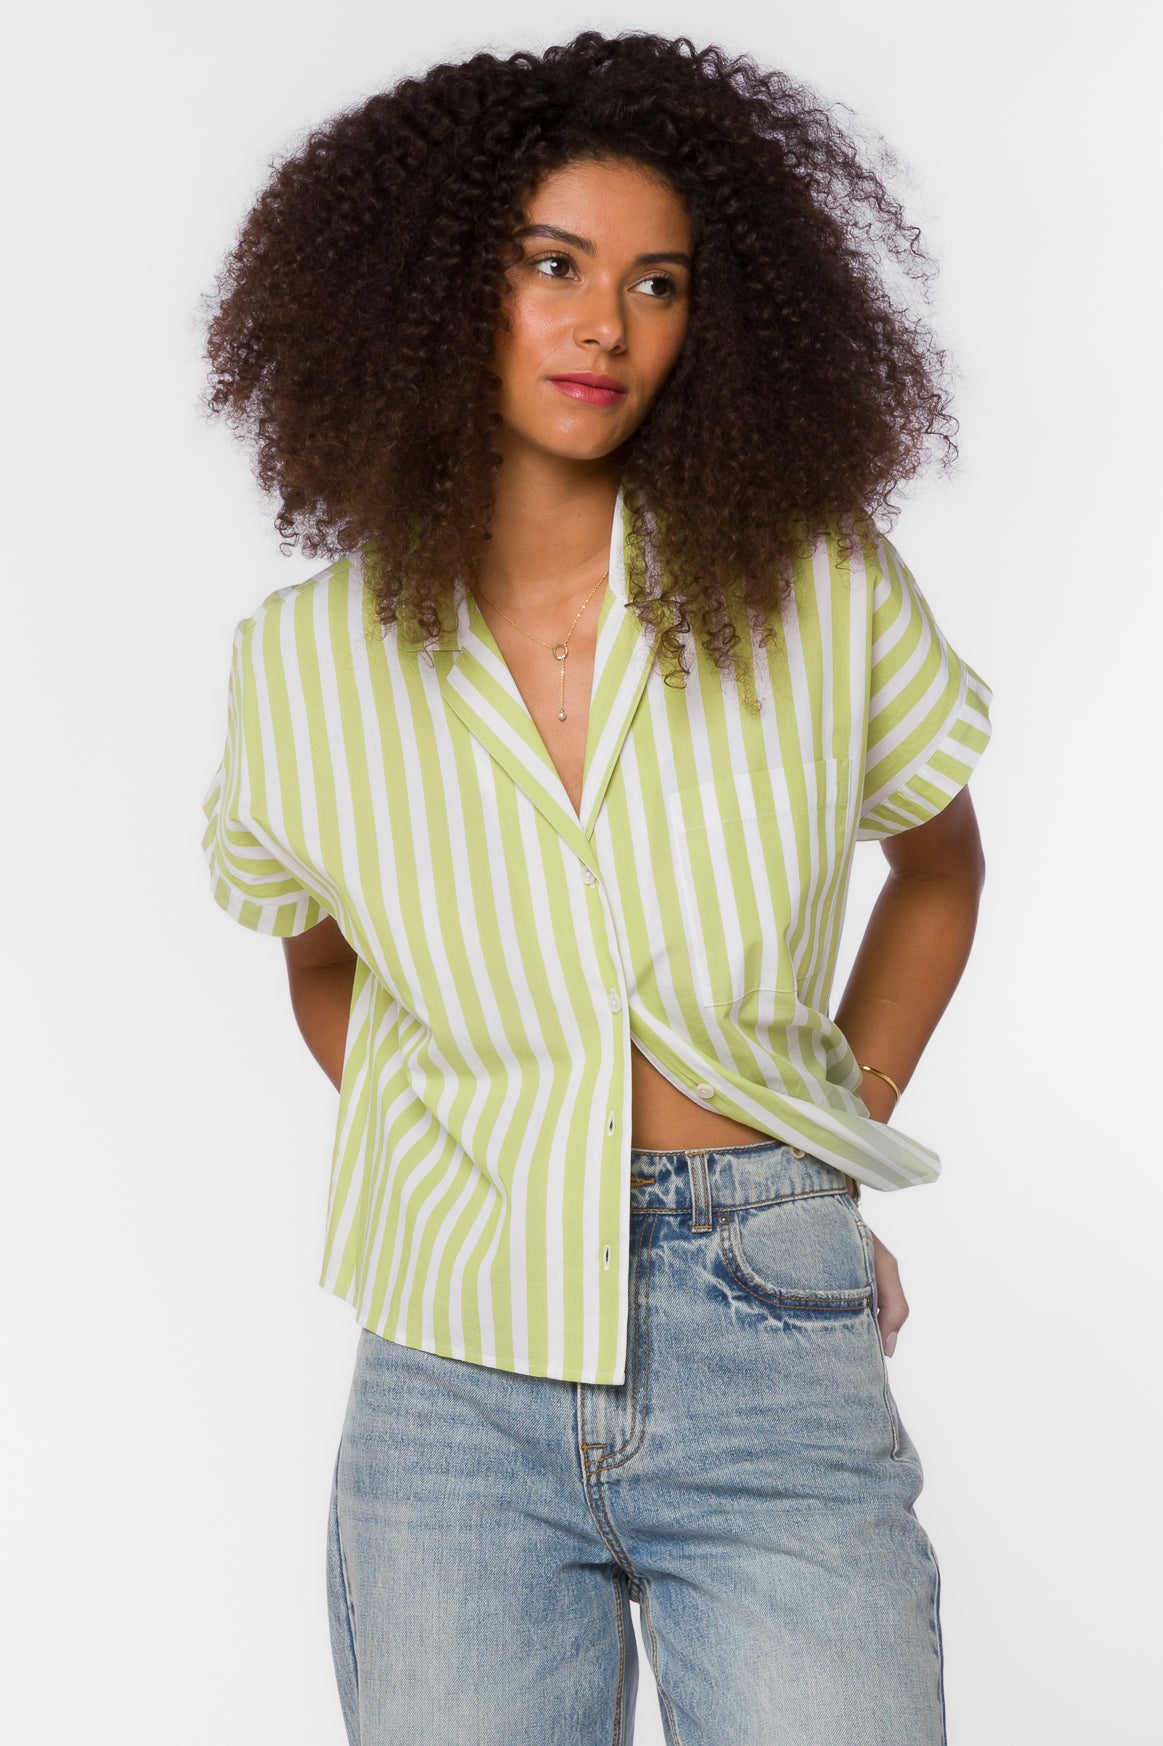 Bane Citron White Stripe Shirt - Tops - Velvet Heart Clothing